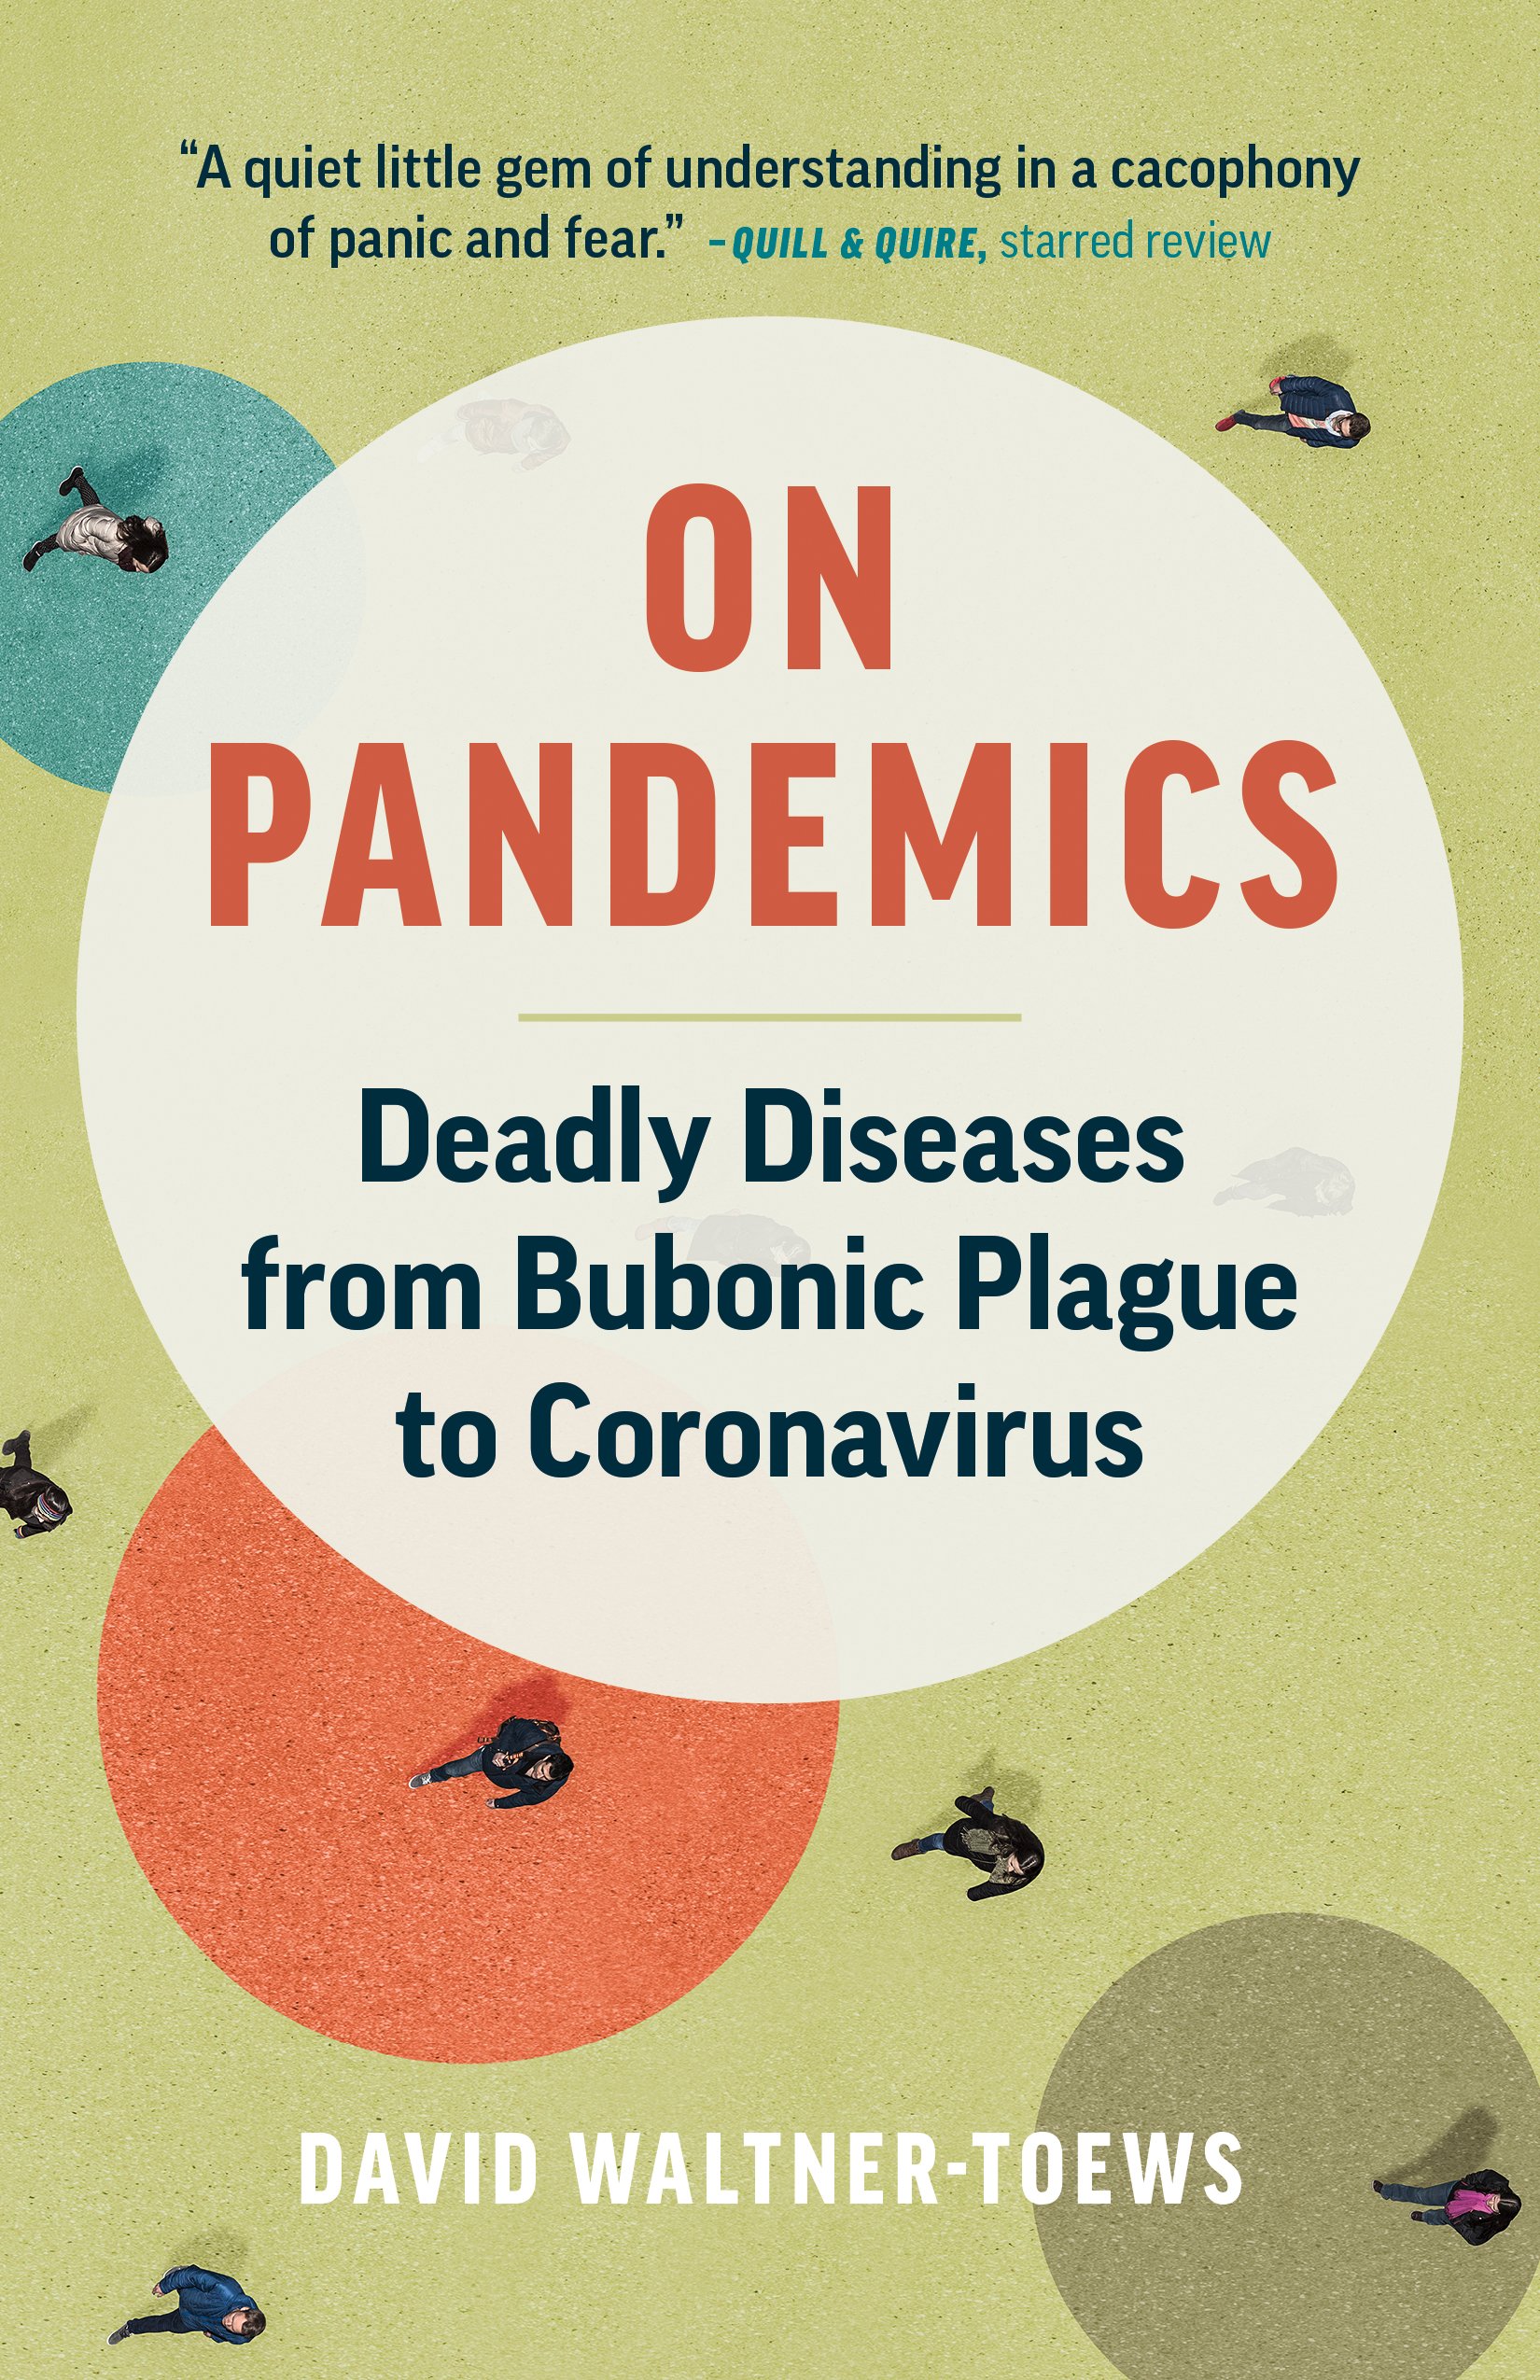 pandemics book cover